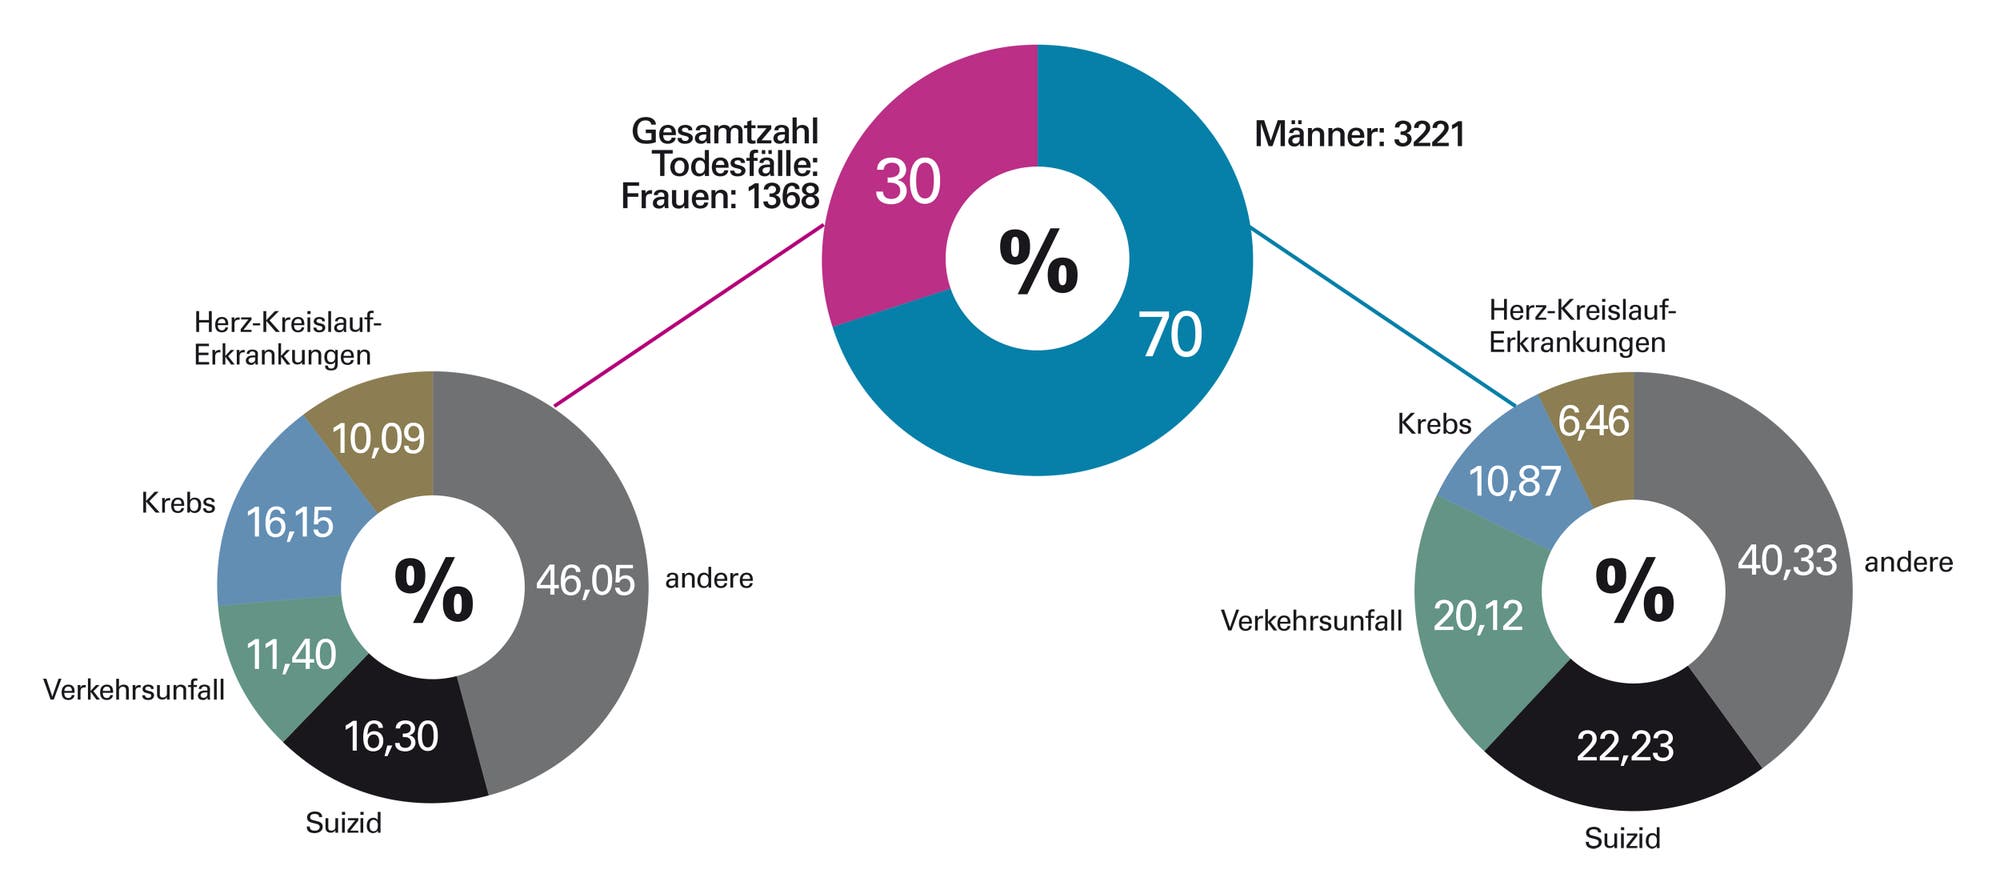 Todesfälle bei 15- bis 30-Jährigen 2015 in Deutschland